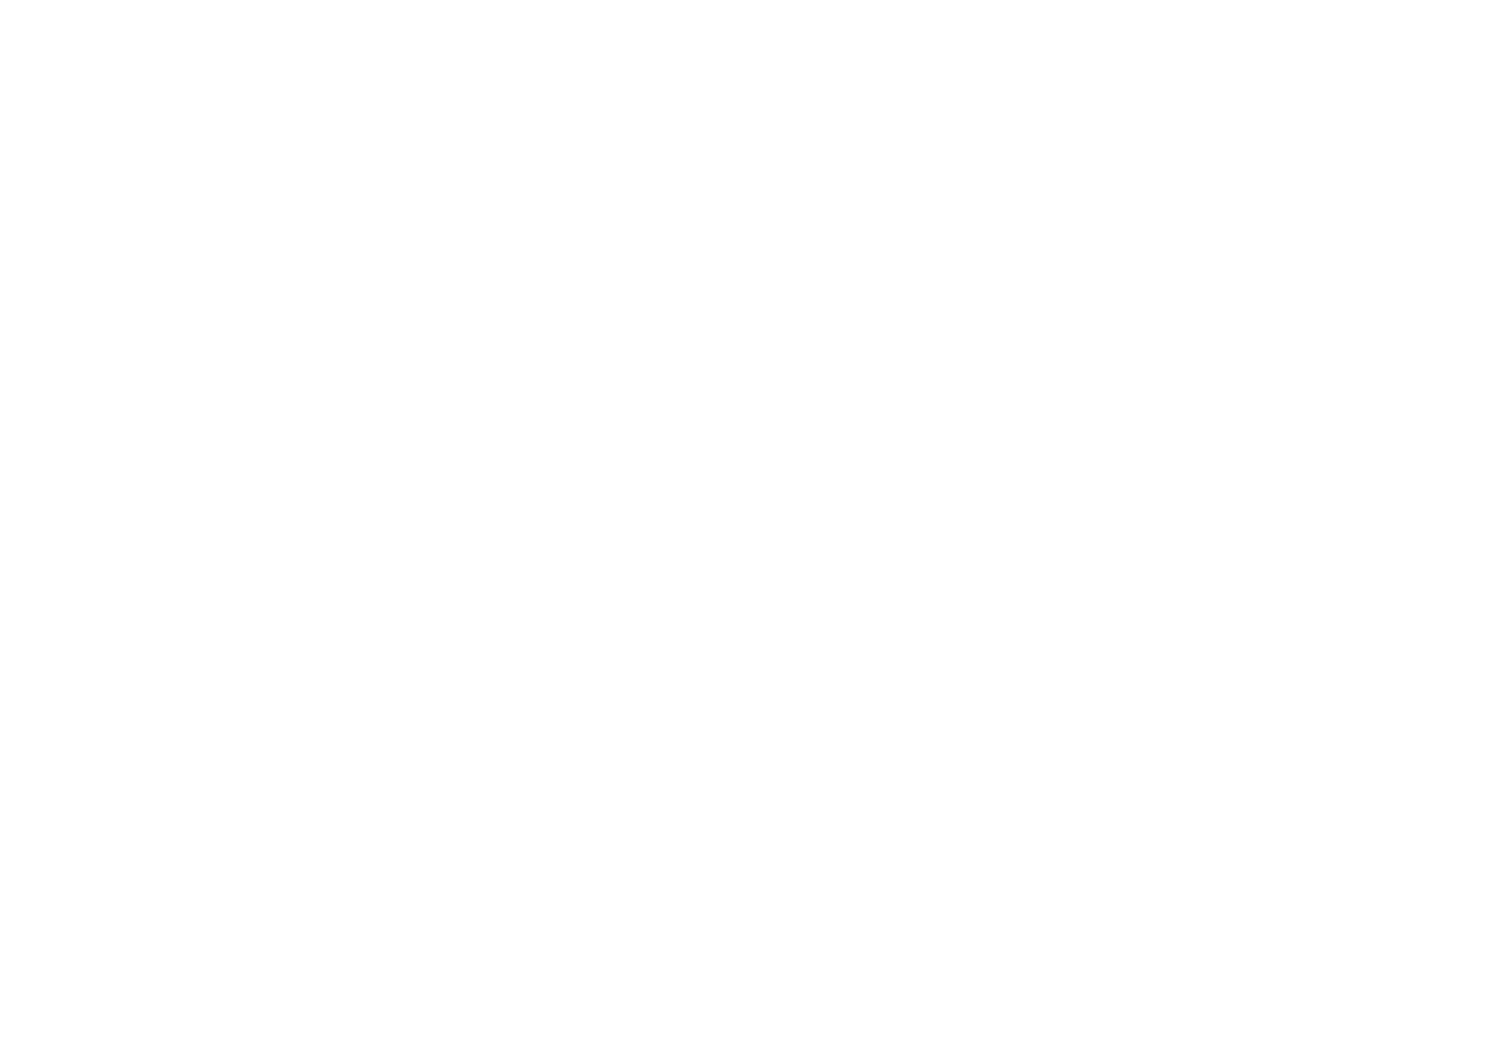 Muslim Futures